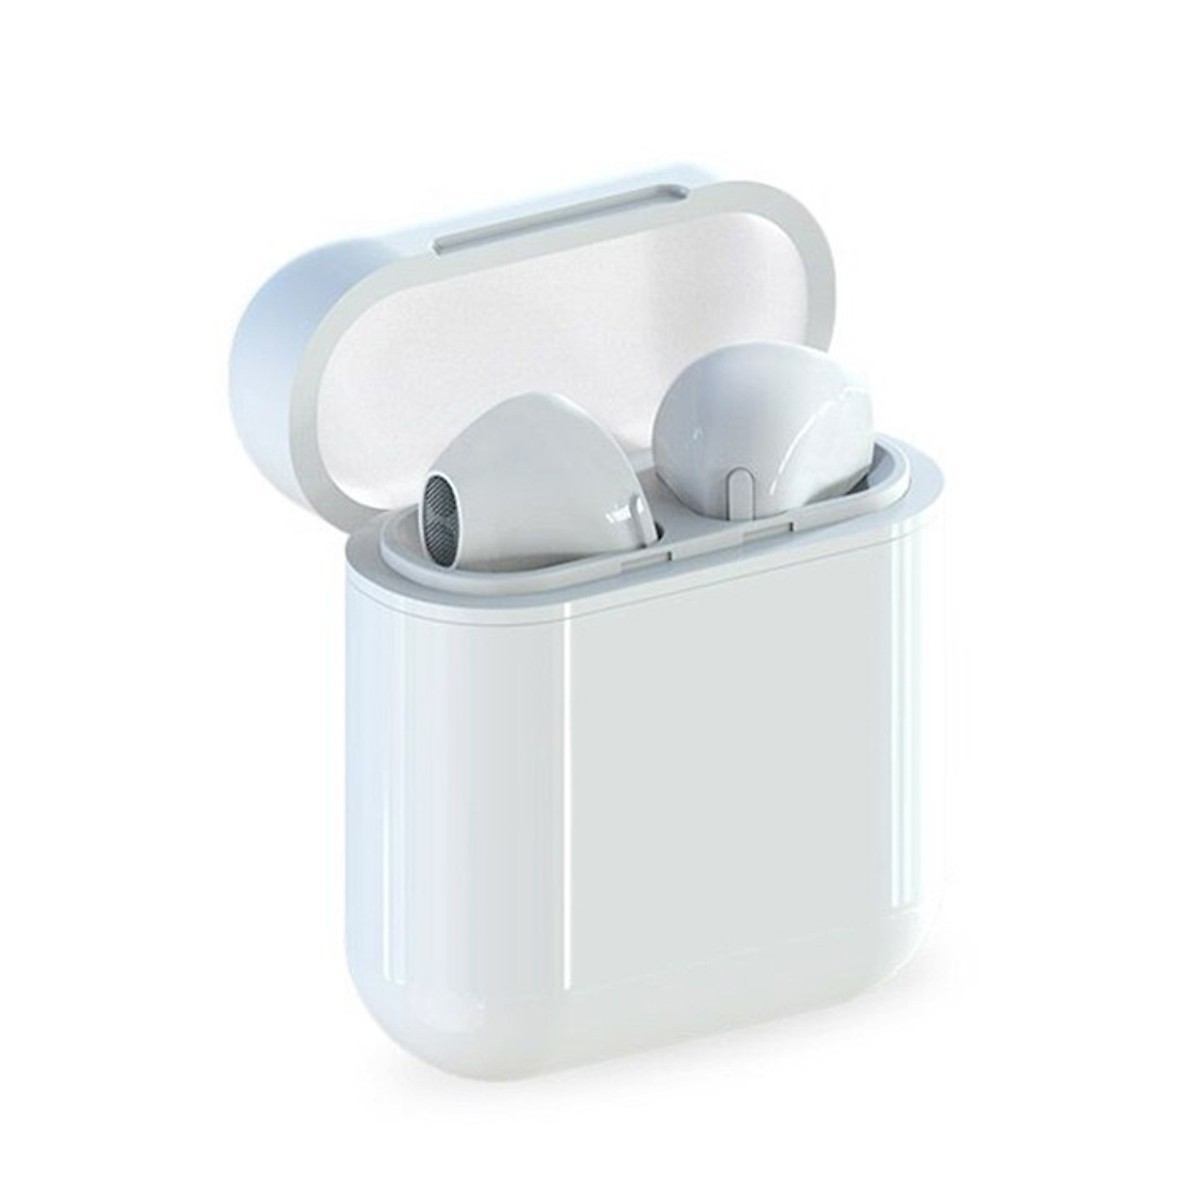 Tai nghe Bluetooth i9S 5.0 tai nghe không dây đôi kiểu dáng Thời Trang - Tặng hộp đựng tai nghe silicon